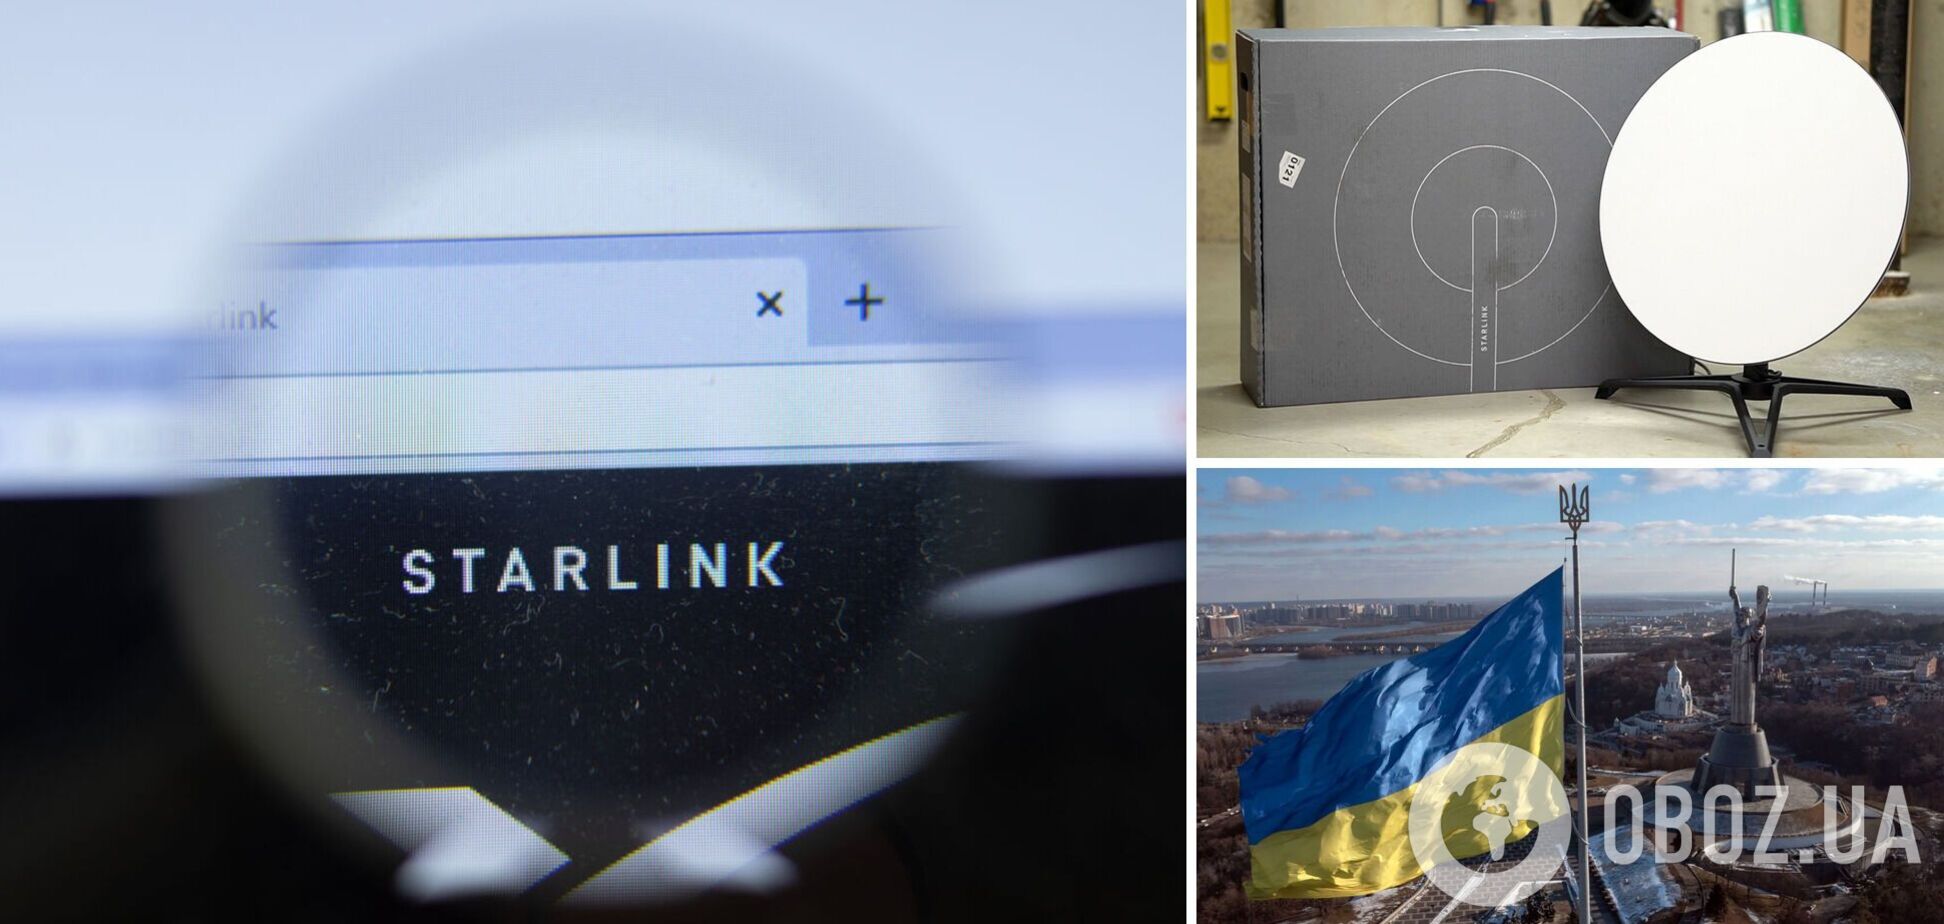 Для Starlink в Украине готовят техническую базу